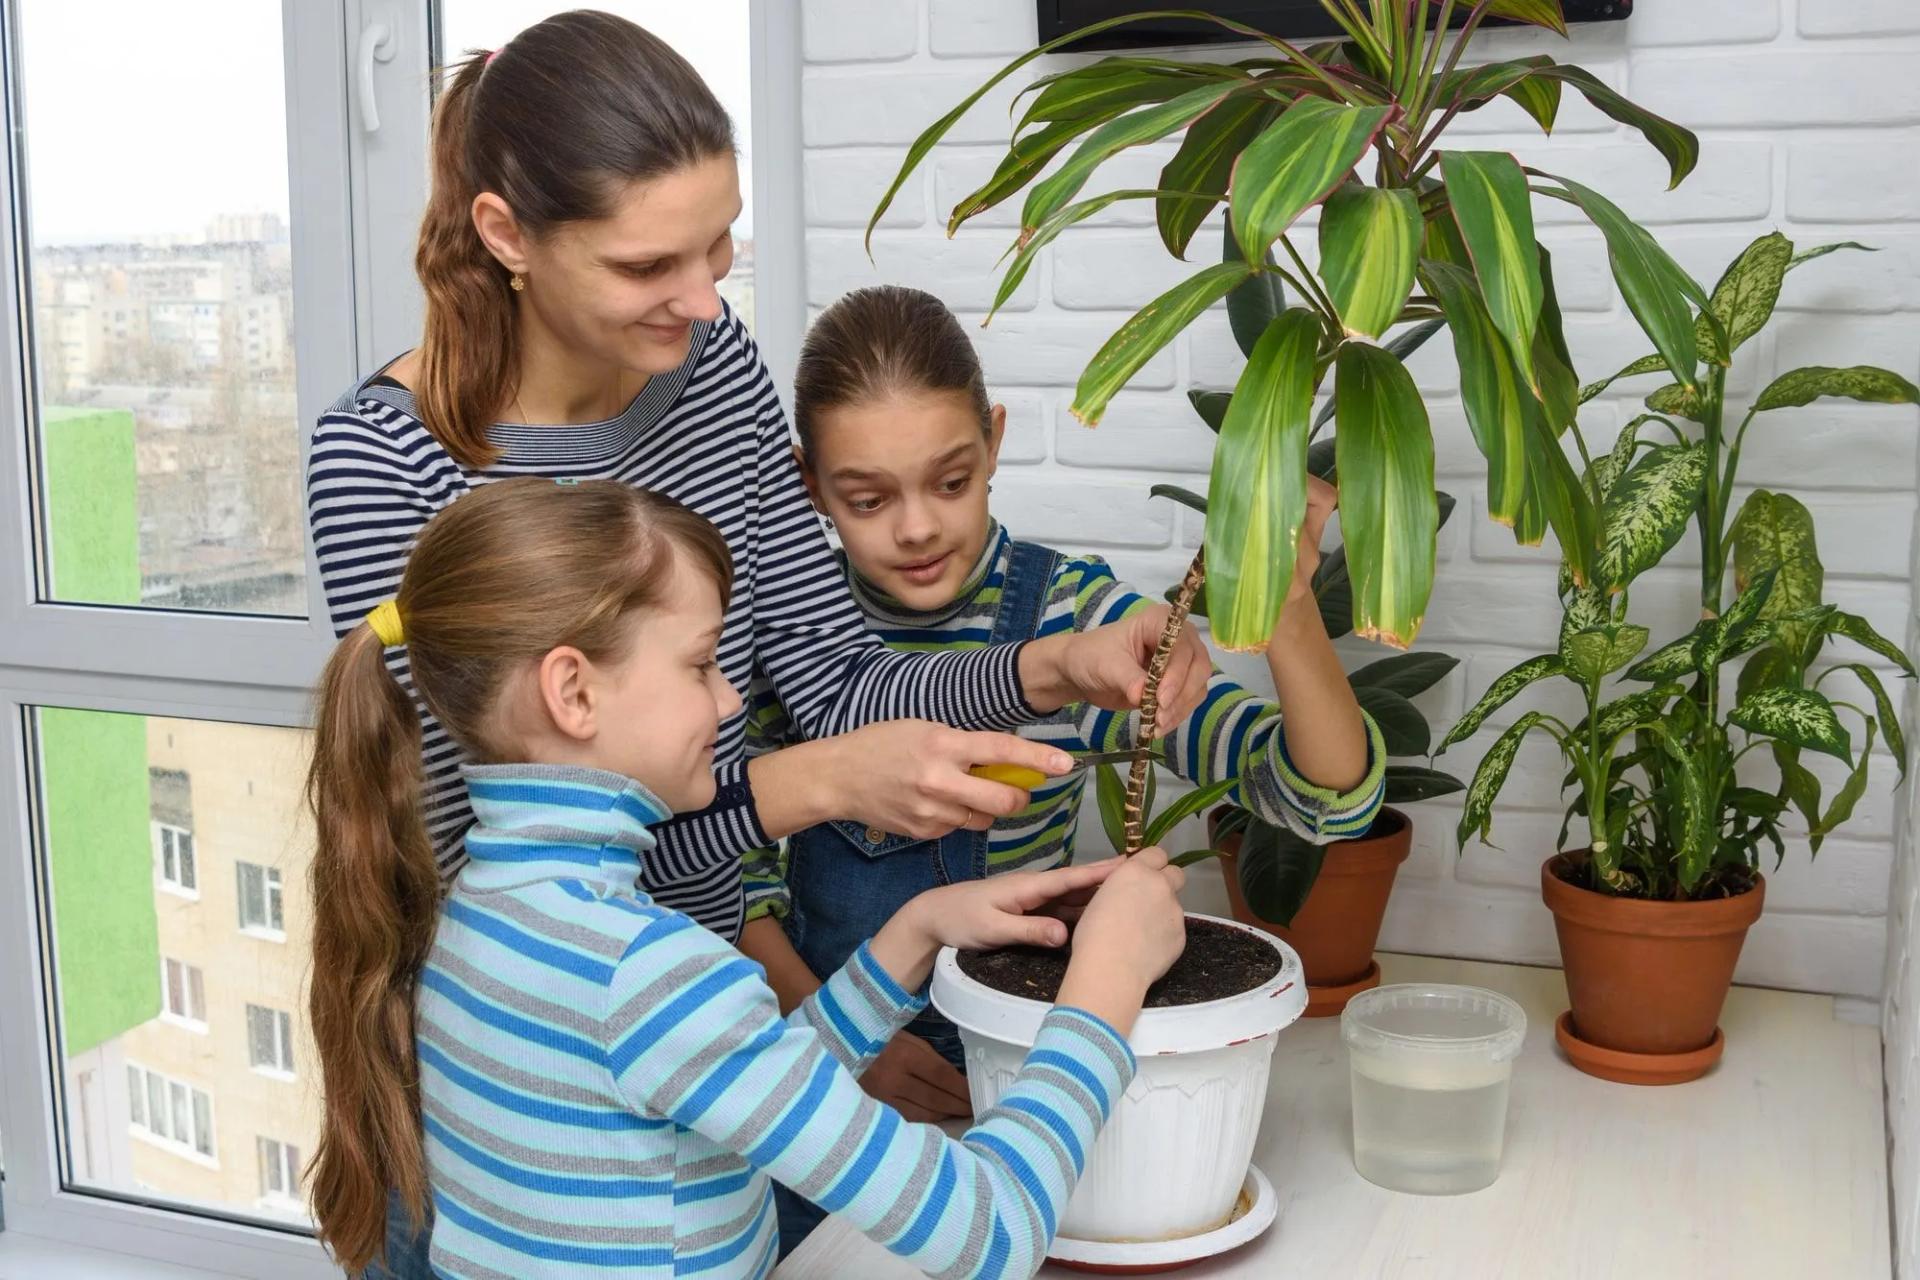 Children near plants